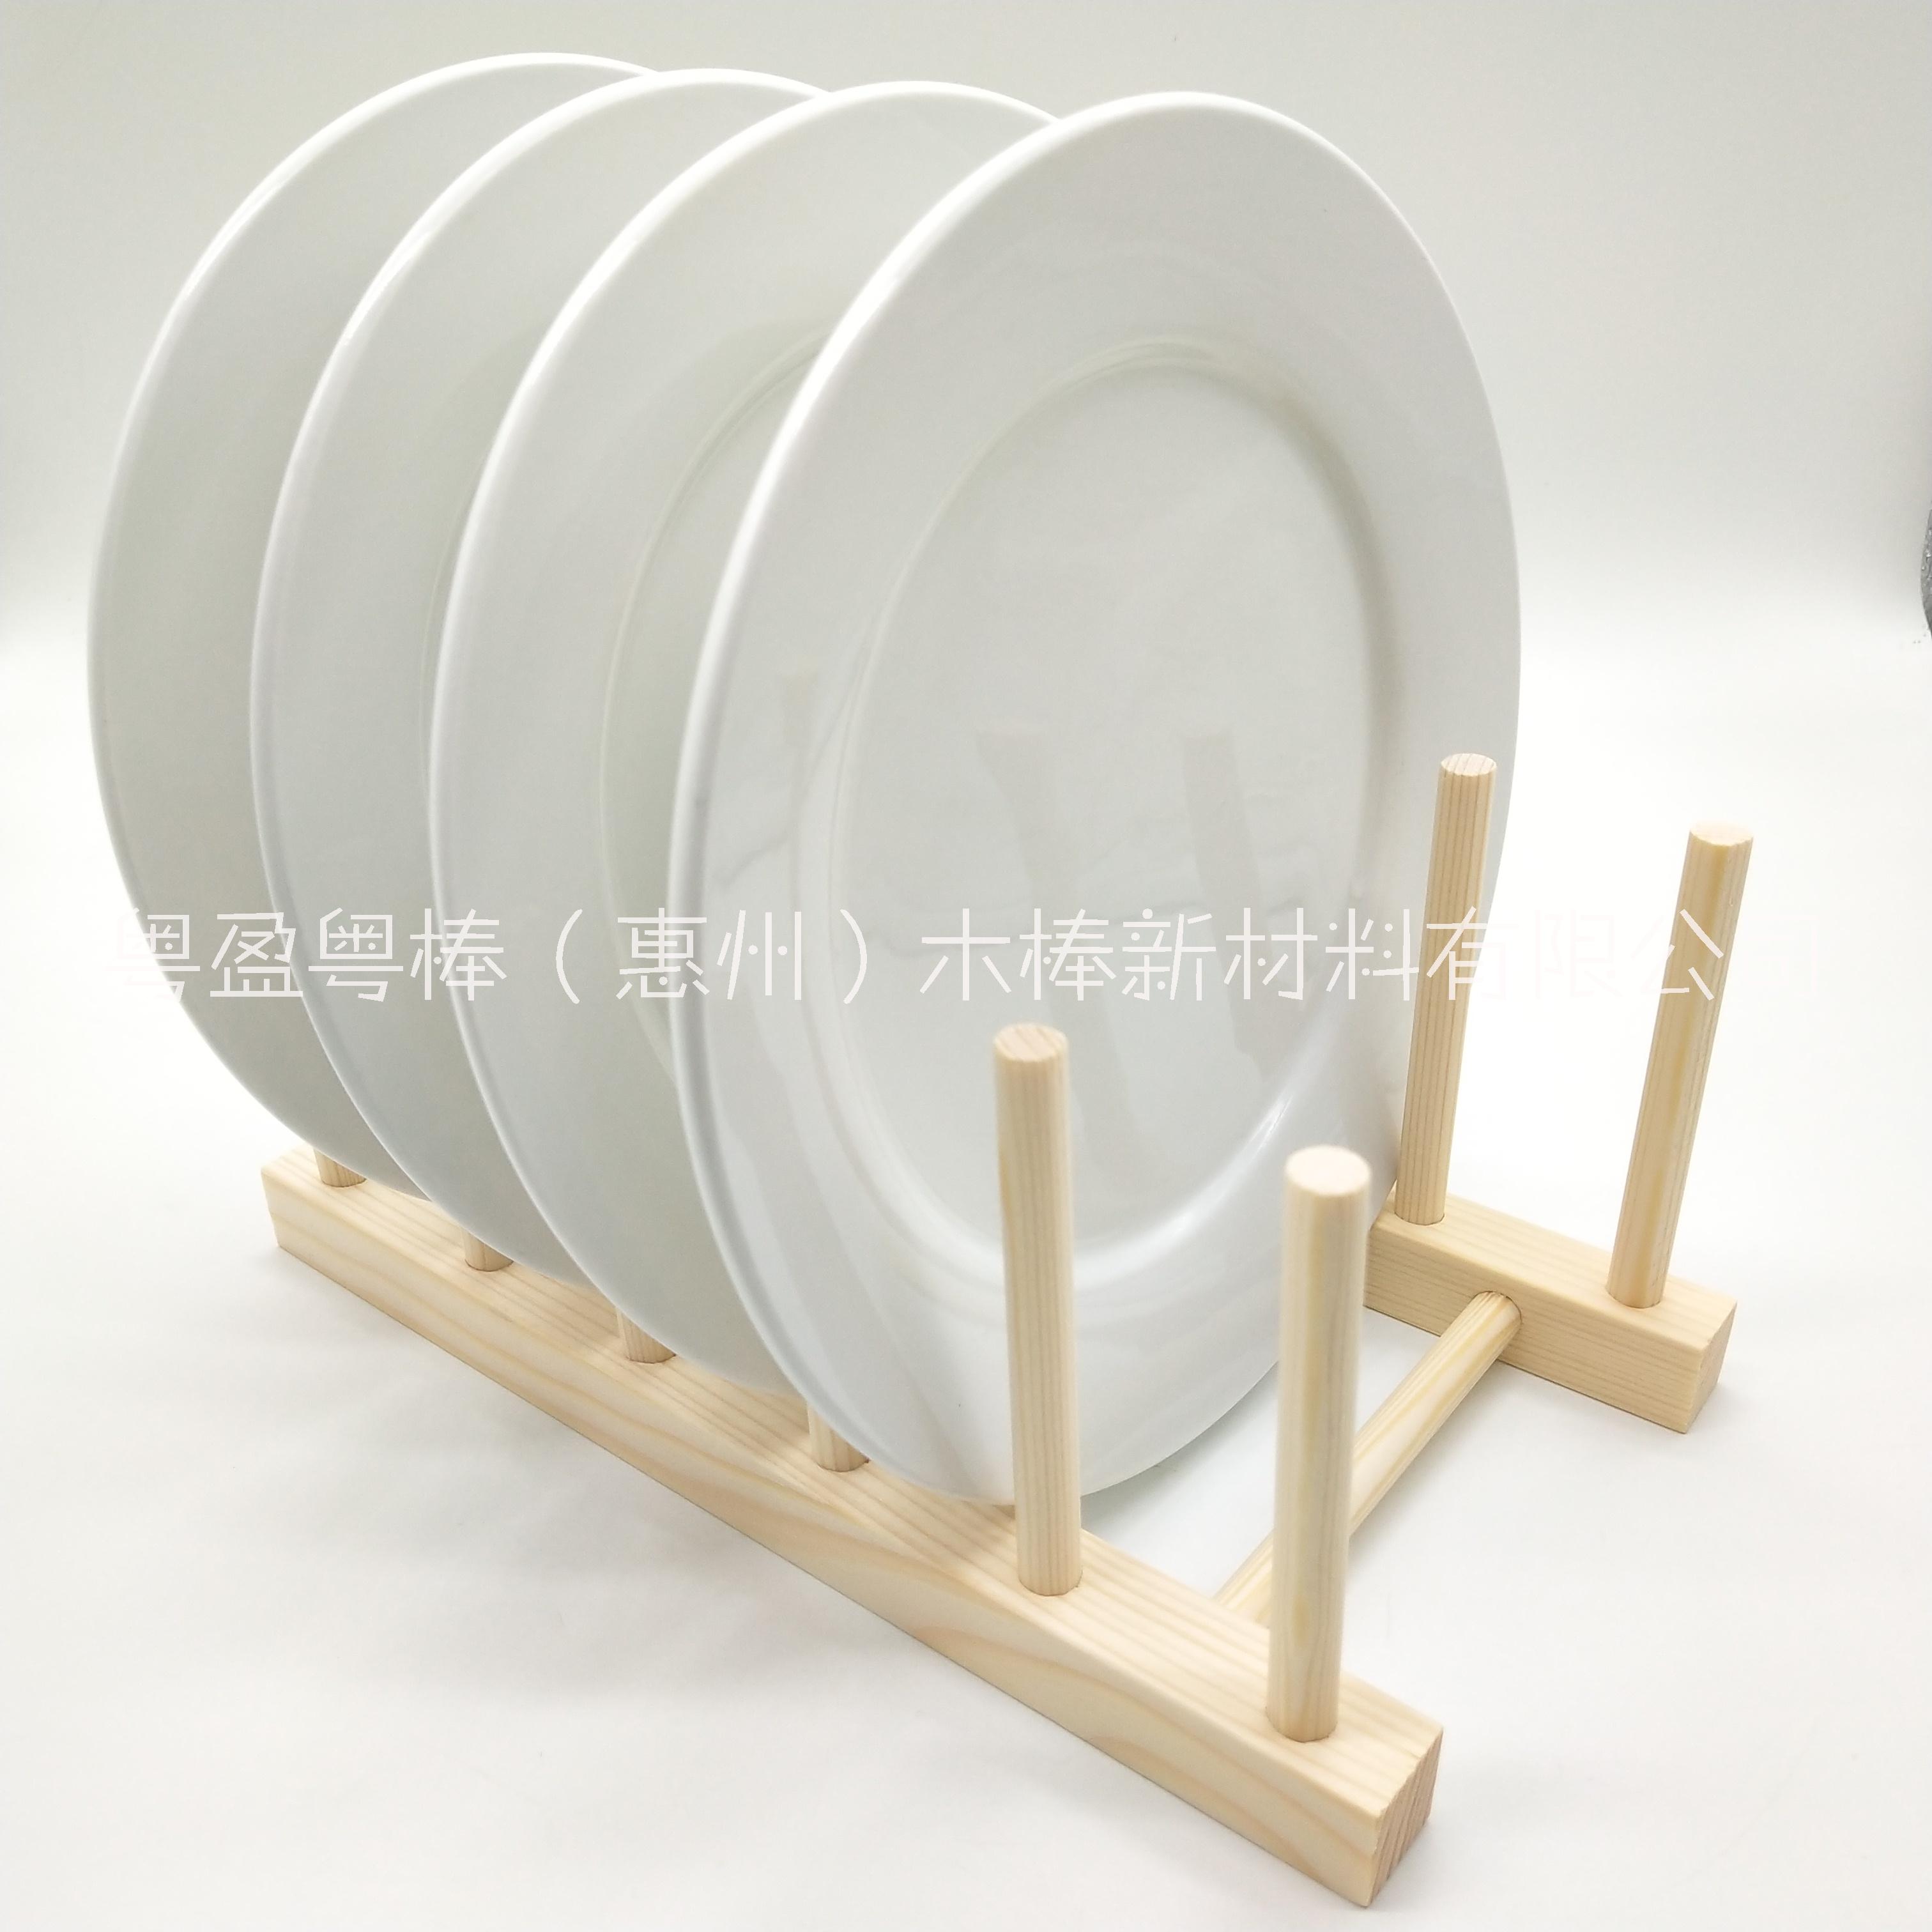 厂家直销木质厨房碗碟盘子木质沥水架 松木茶饼展示架 实木沥水收纳架